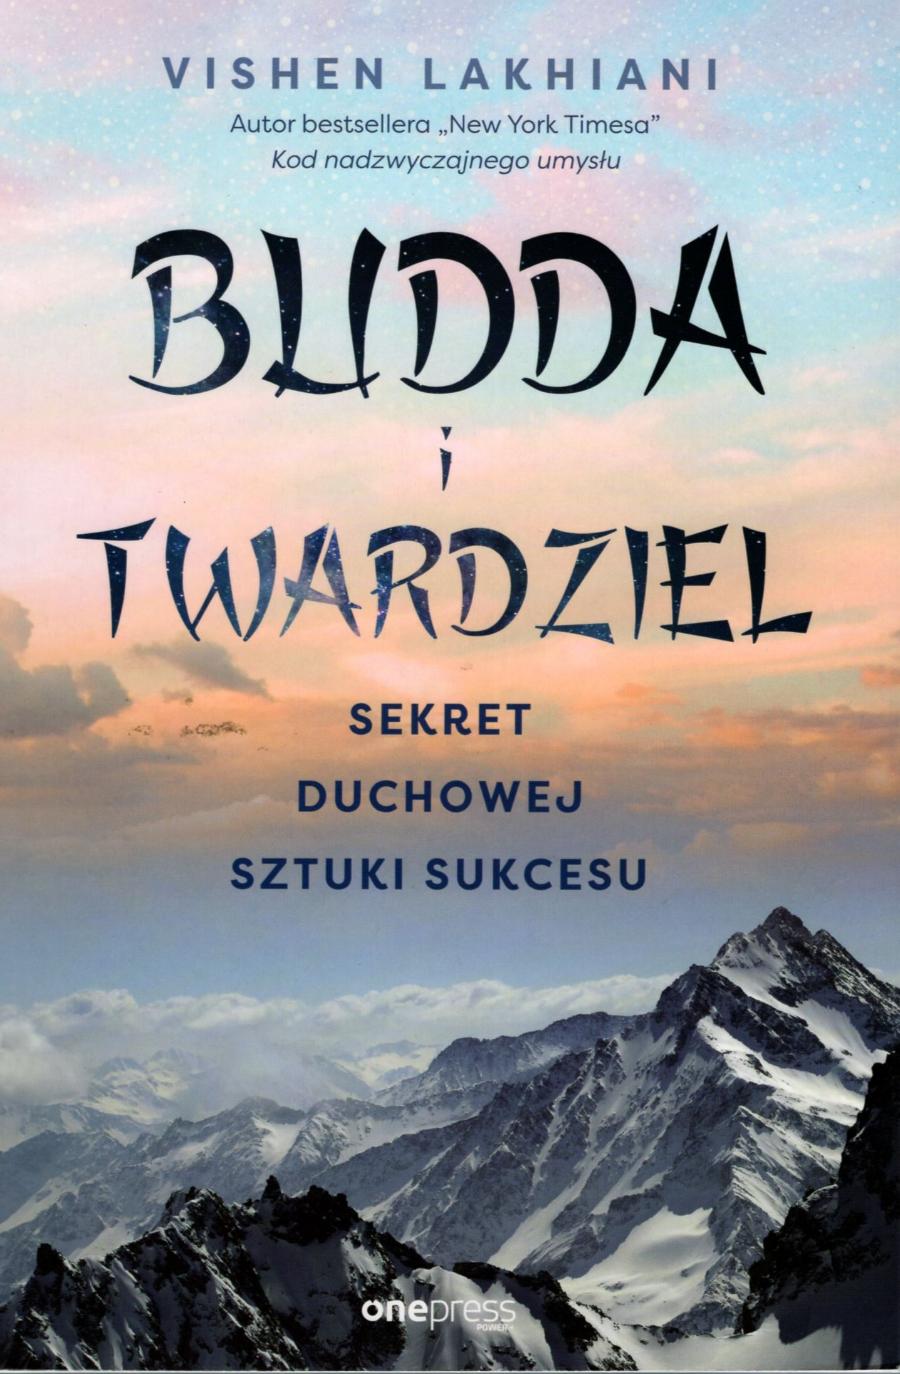 Polecamy książkę: „Budda i twardziel. Sekret duchowej sztuki sukcesu”, Vishen Lakhiani, tłum. Marcin Machnik, wyd. Onepress